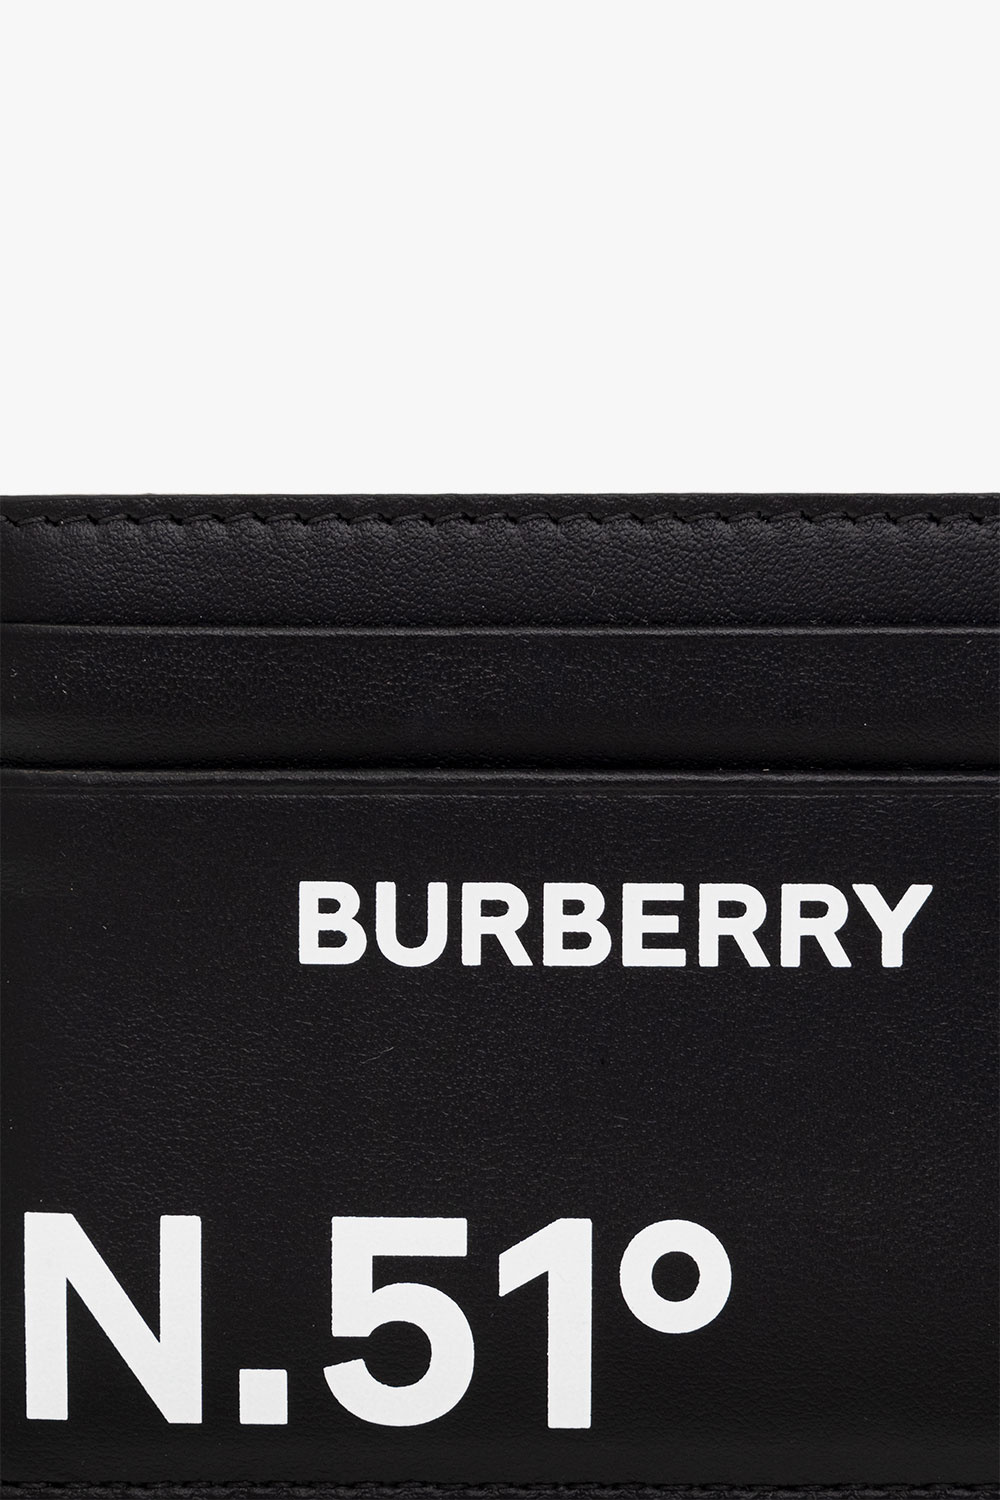 Burberry burberry logo black t shirt